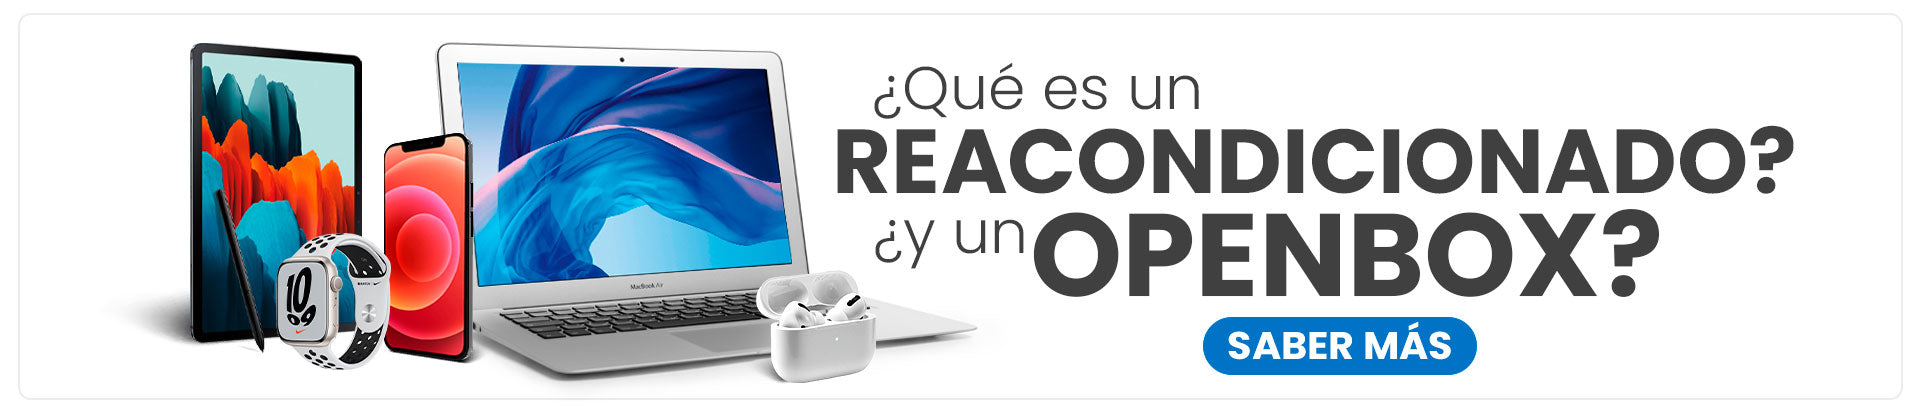 Apple iPhone XS Max Plata 64GB Reacondicionado — Reuse Perú